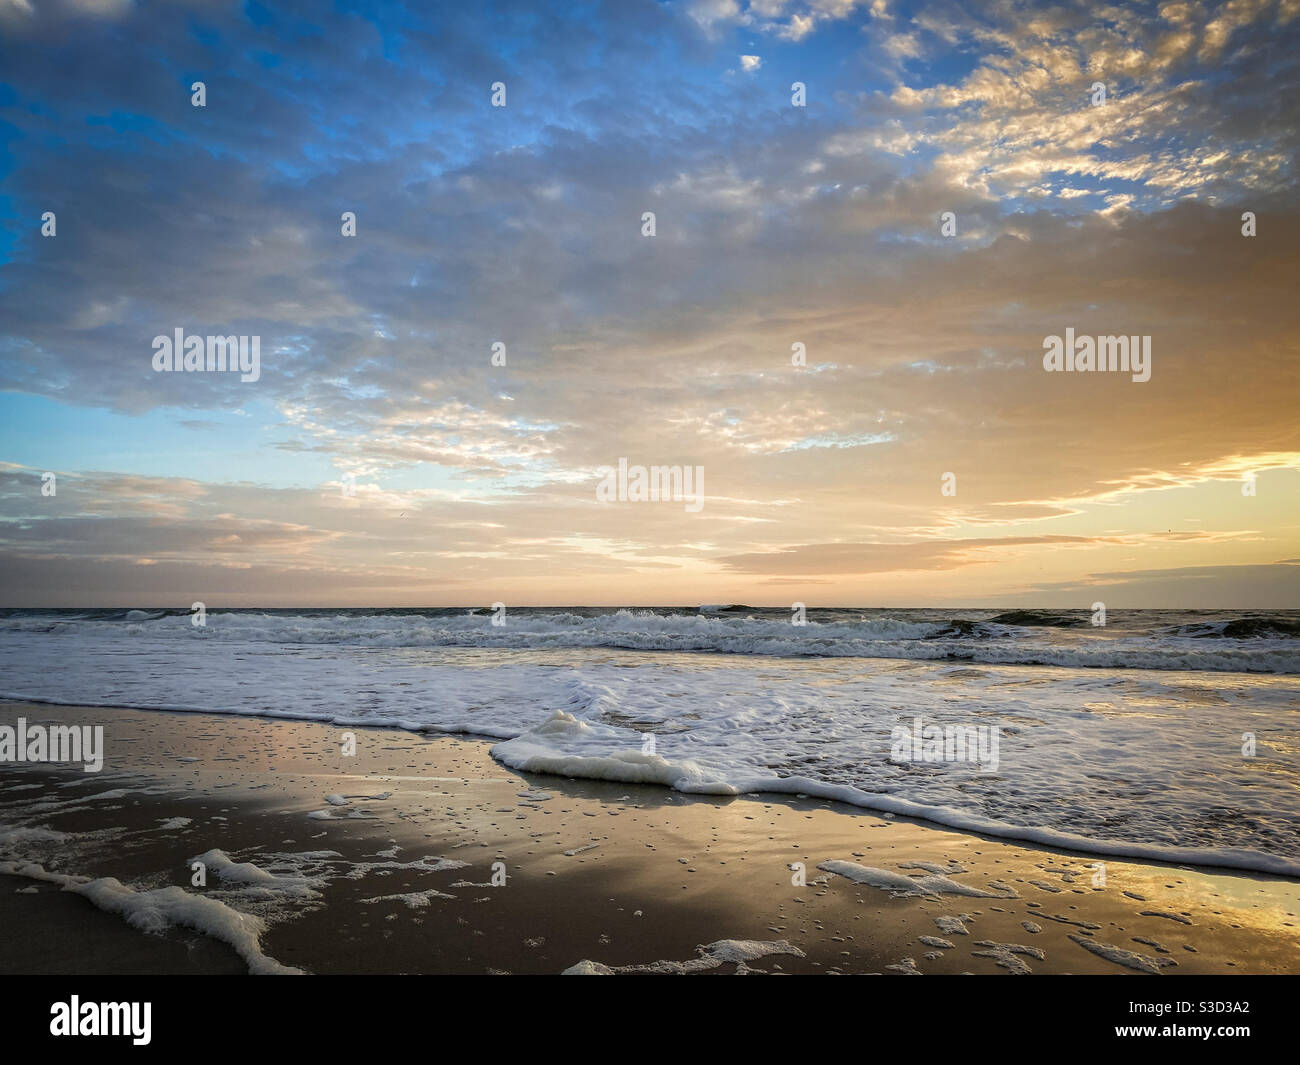 Magnifique lever de soleil sur la plage avec des vagues se lavant sur l'île d'Amelia, en Floride. Banque D'Images